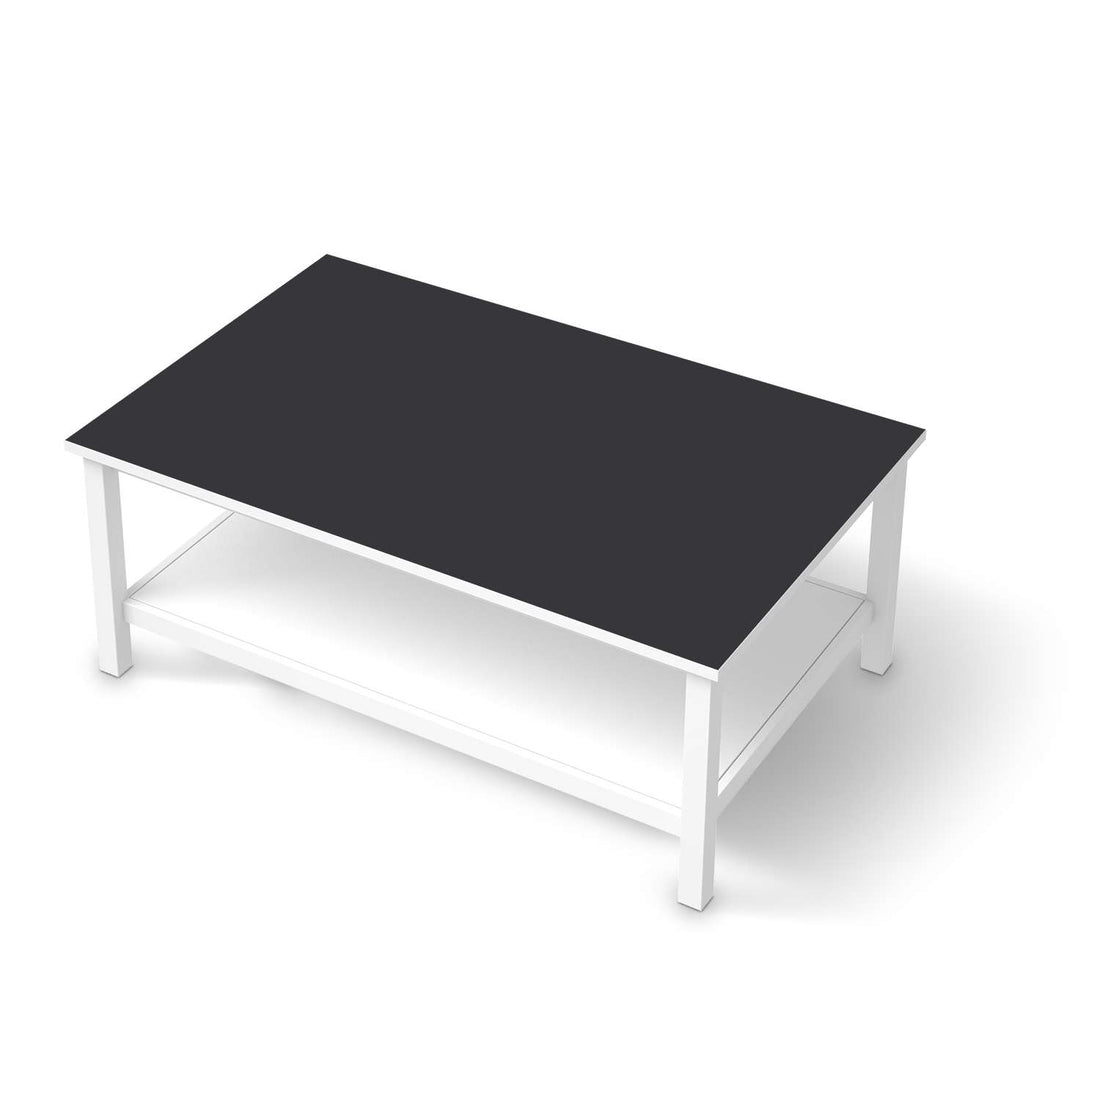 Möbelfolie Grau Dark - IKEA Hemnes Couchtisch 118x75 cm  - weiss